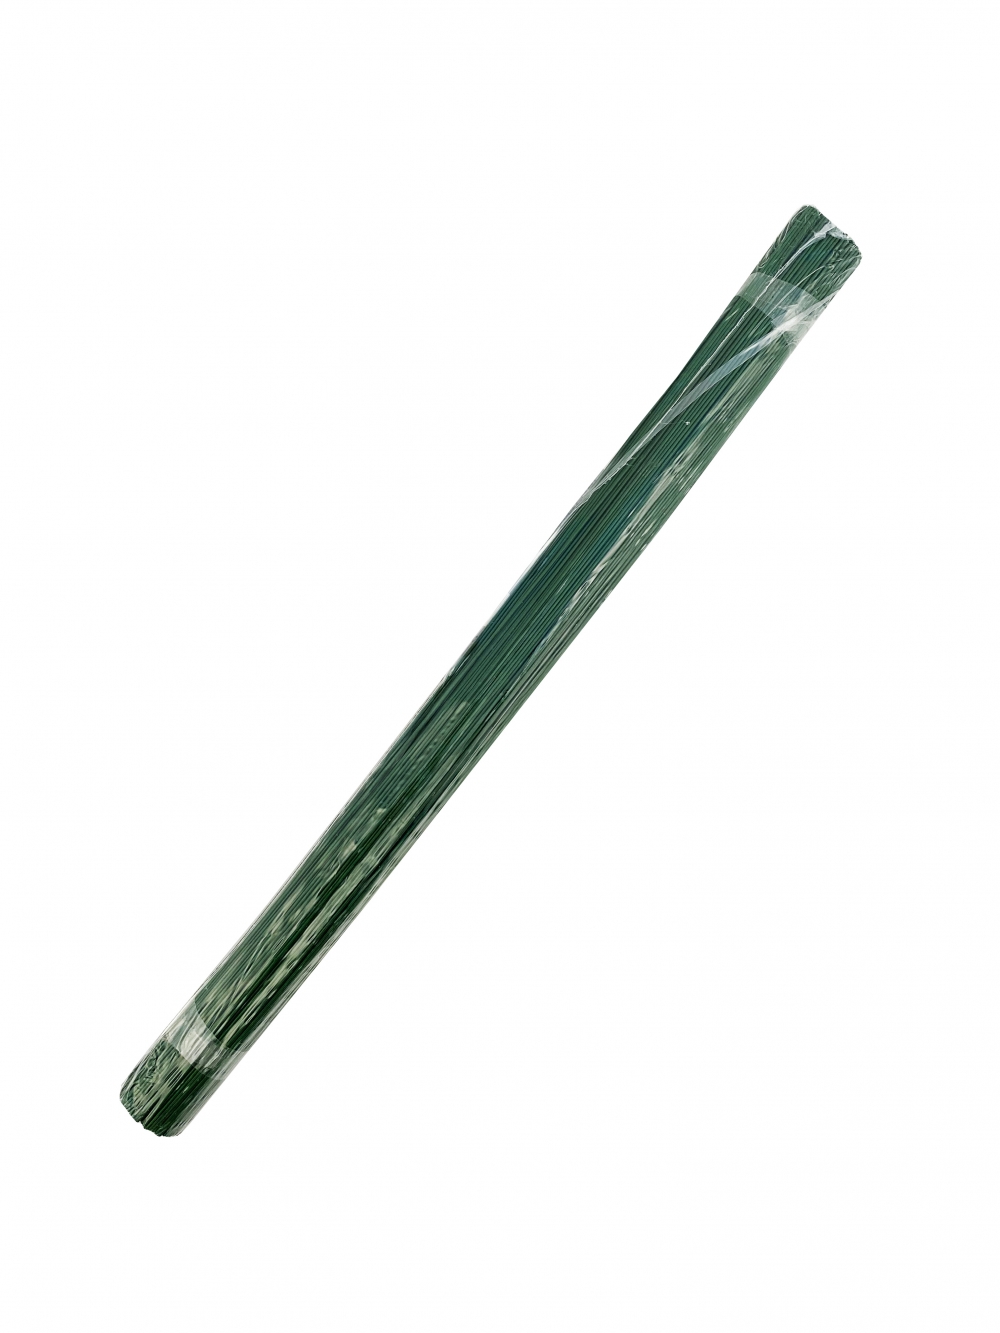 Roheline traat pakendis 0,9mm 1kg